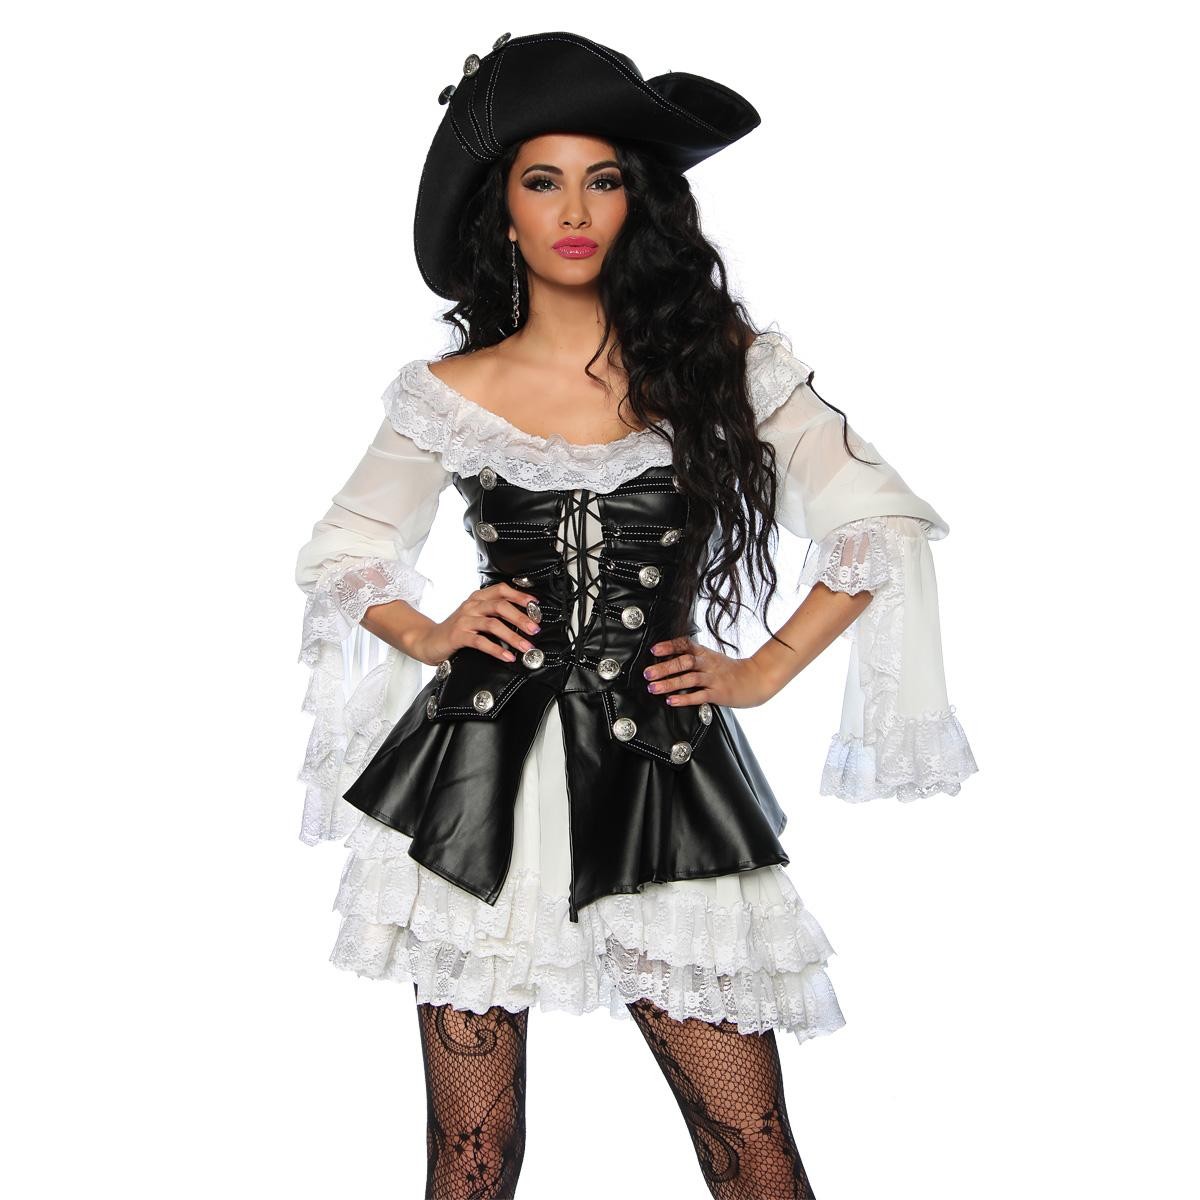  Piratenkostüm  -  schwarz/weiß 